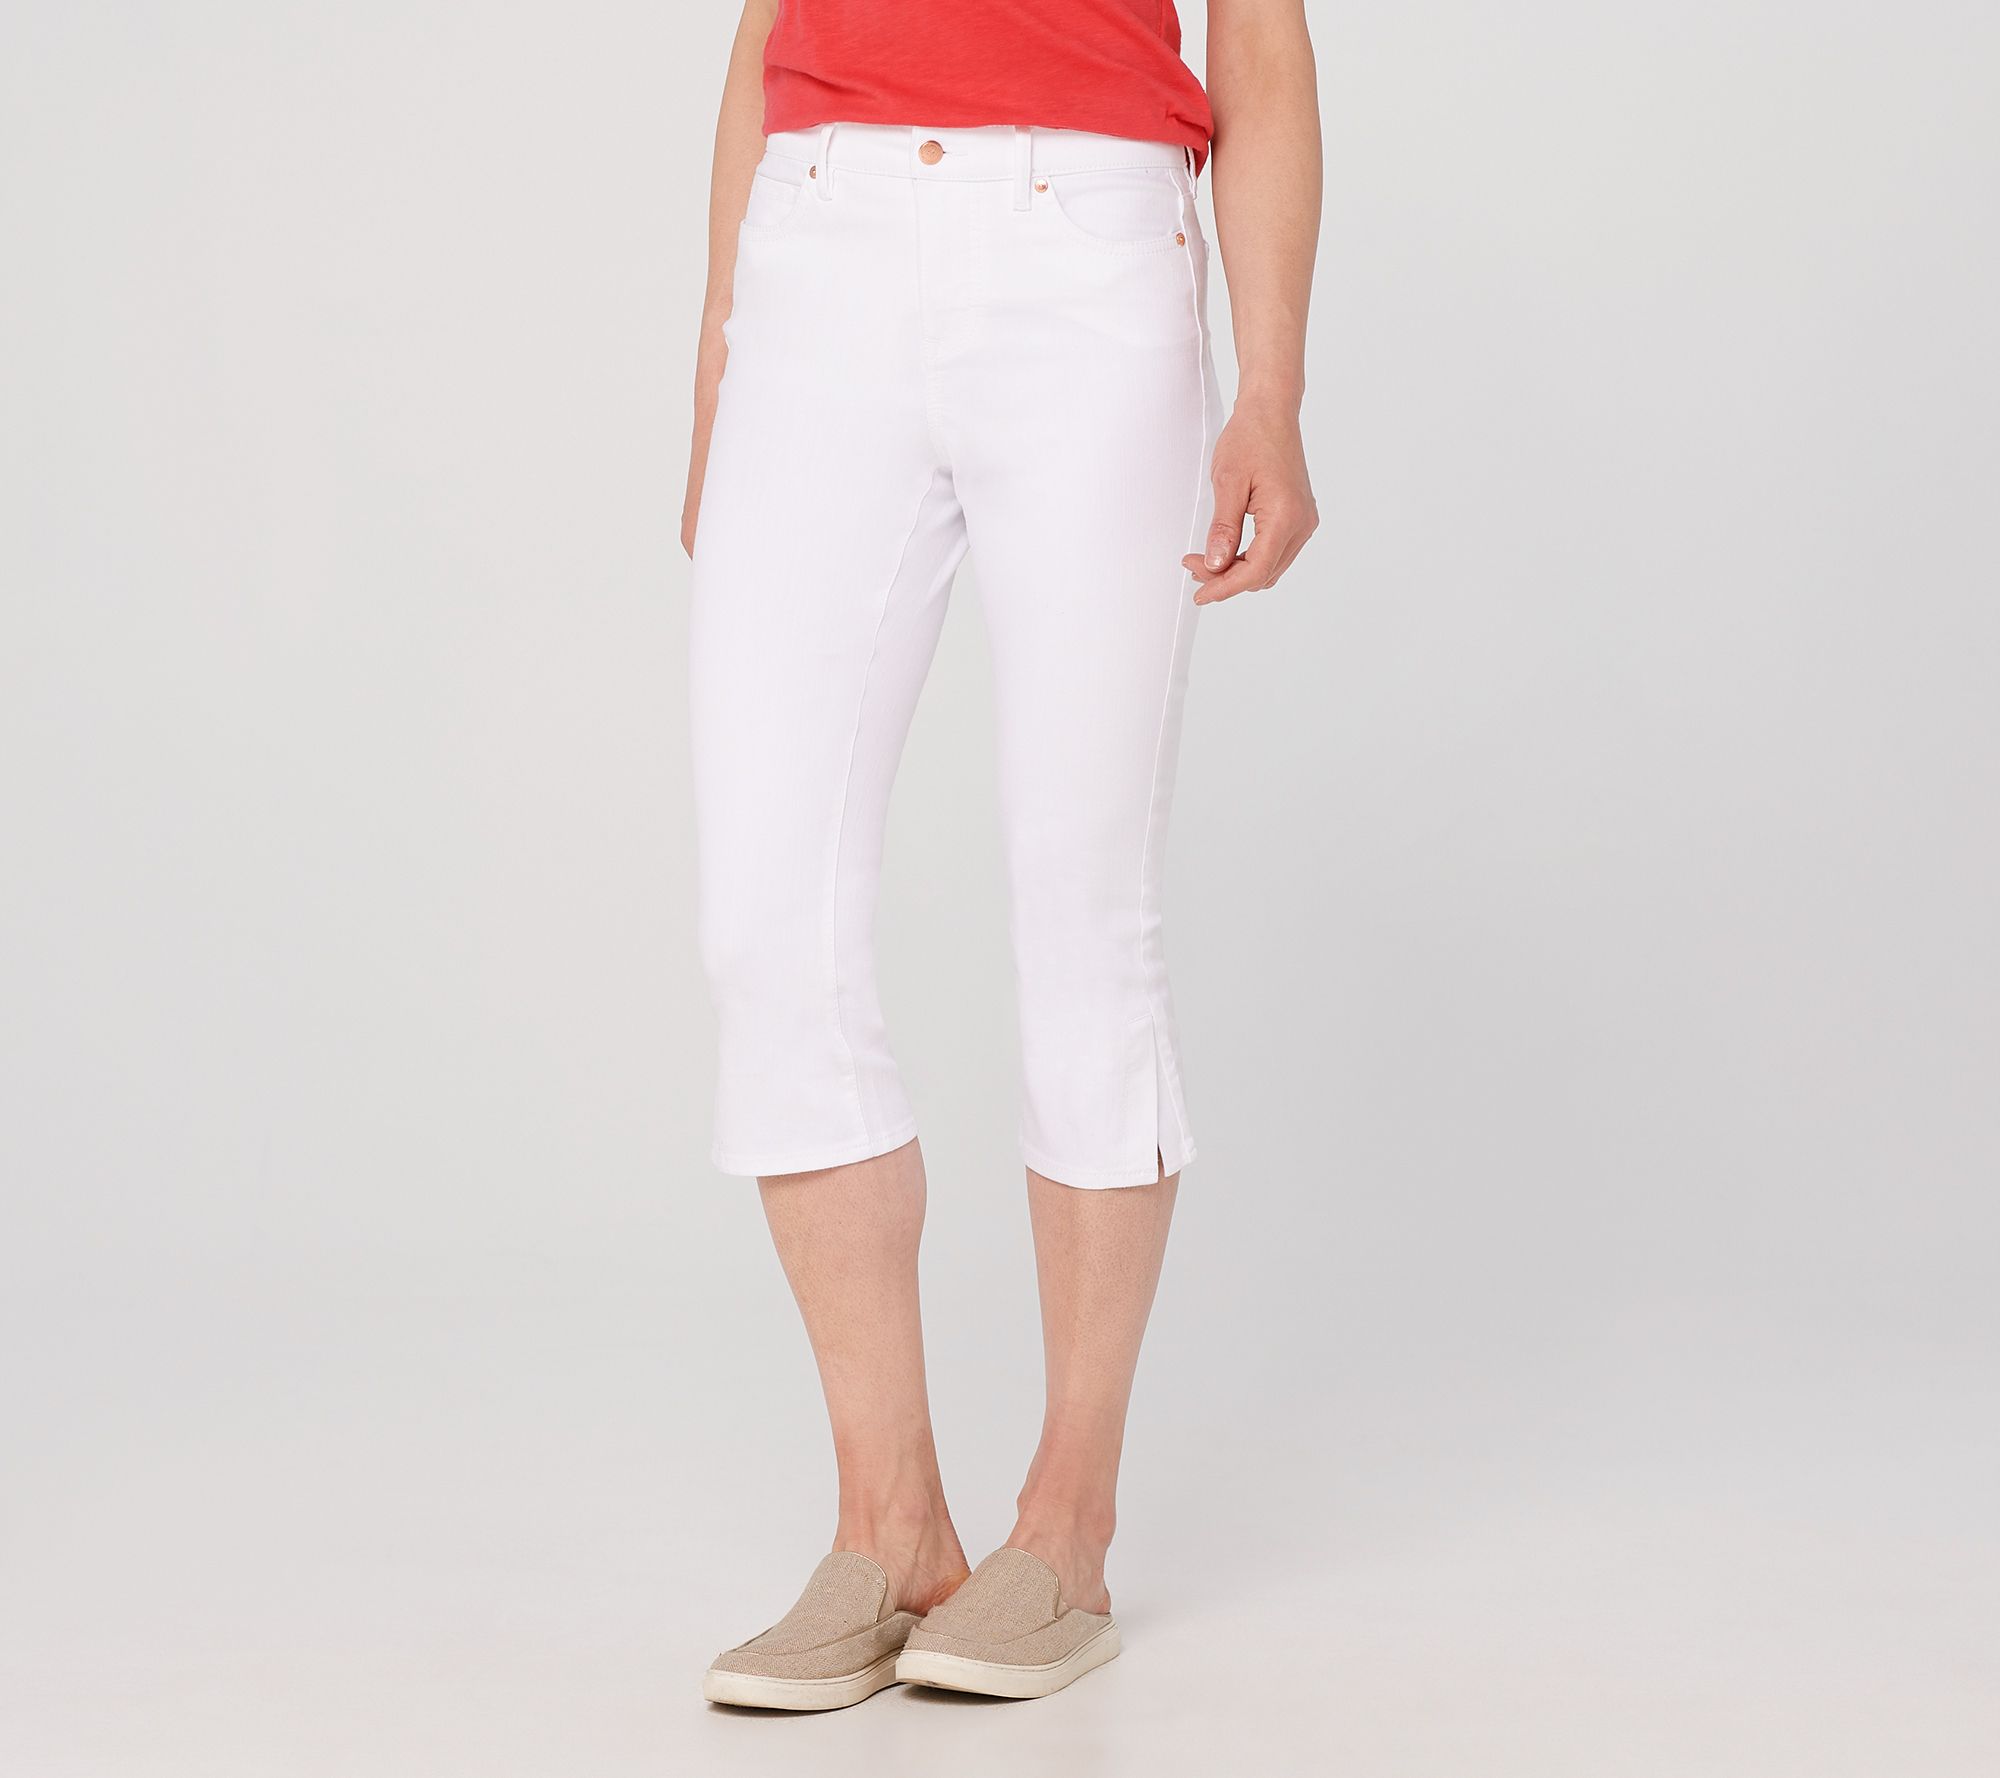 white denim capri jeans